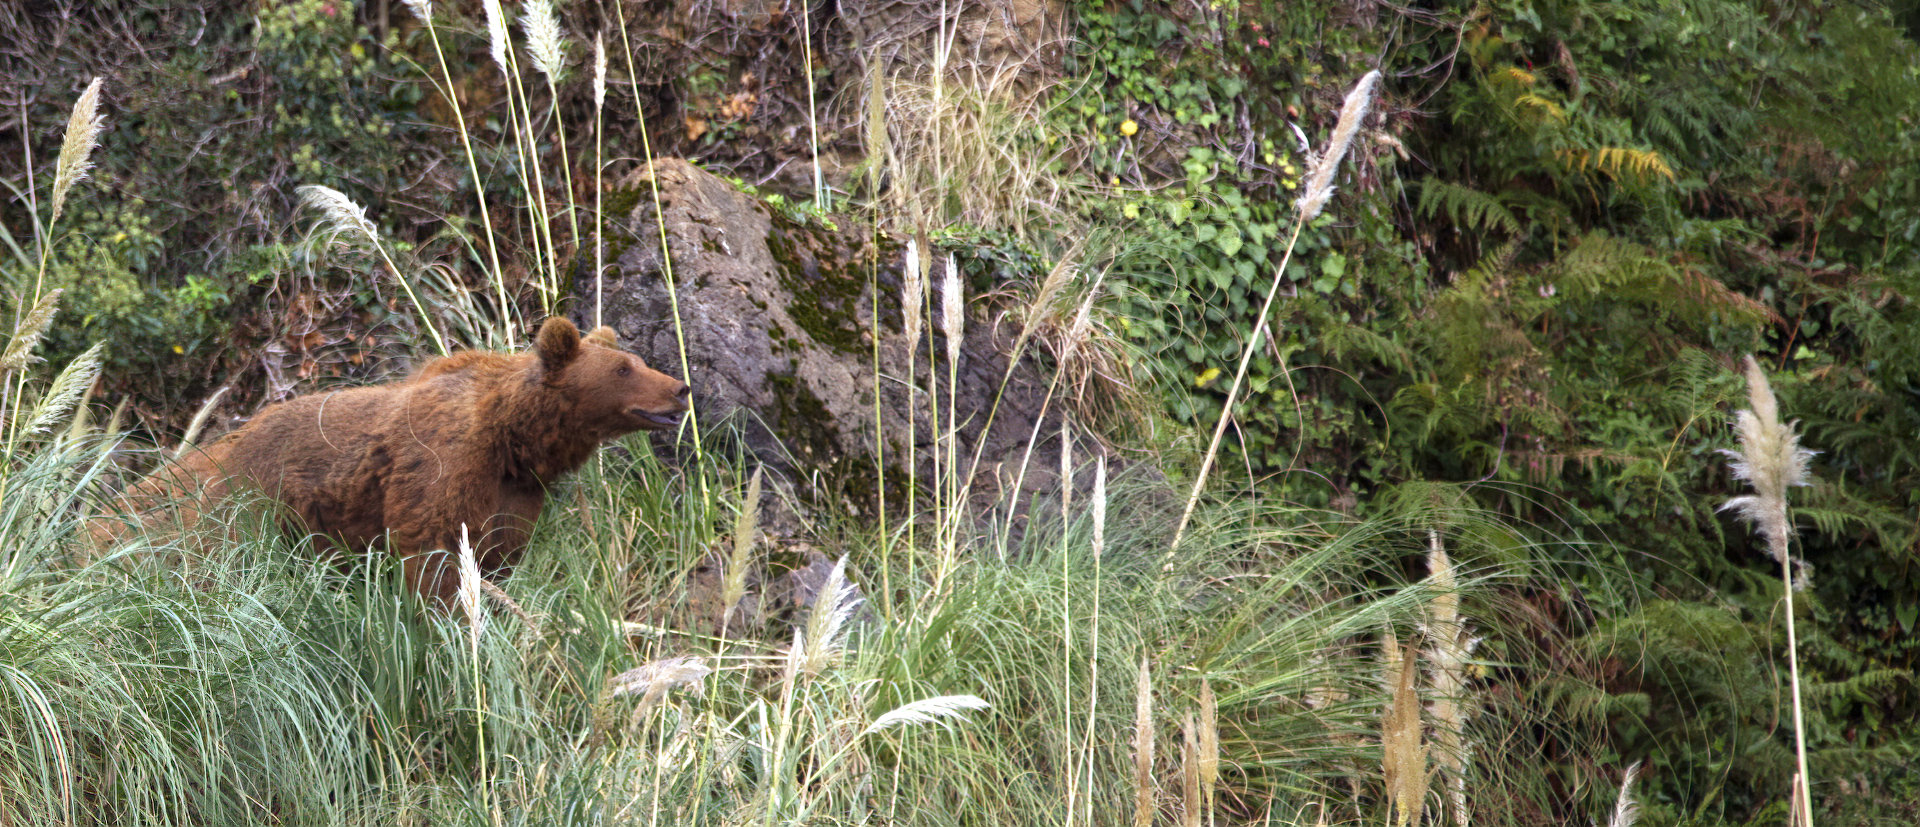 Hábitat y alimentación del oso pardo – Conflicto con el ser humano